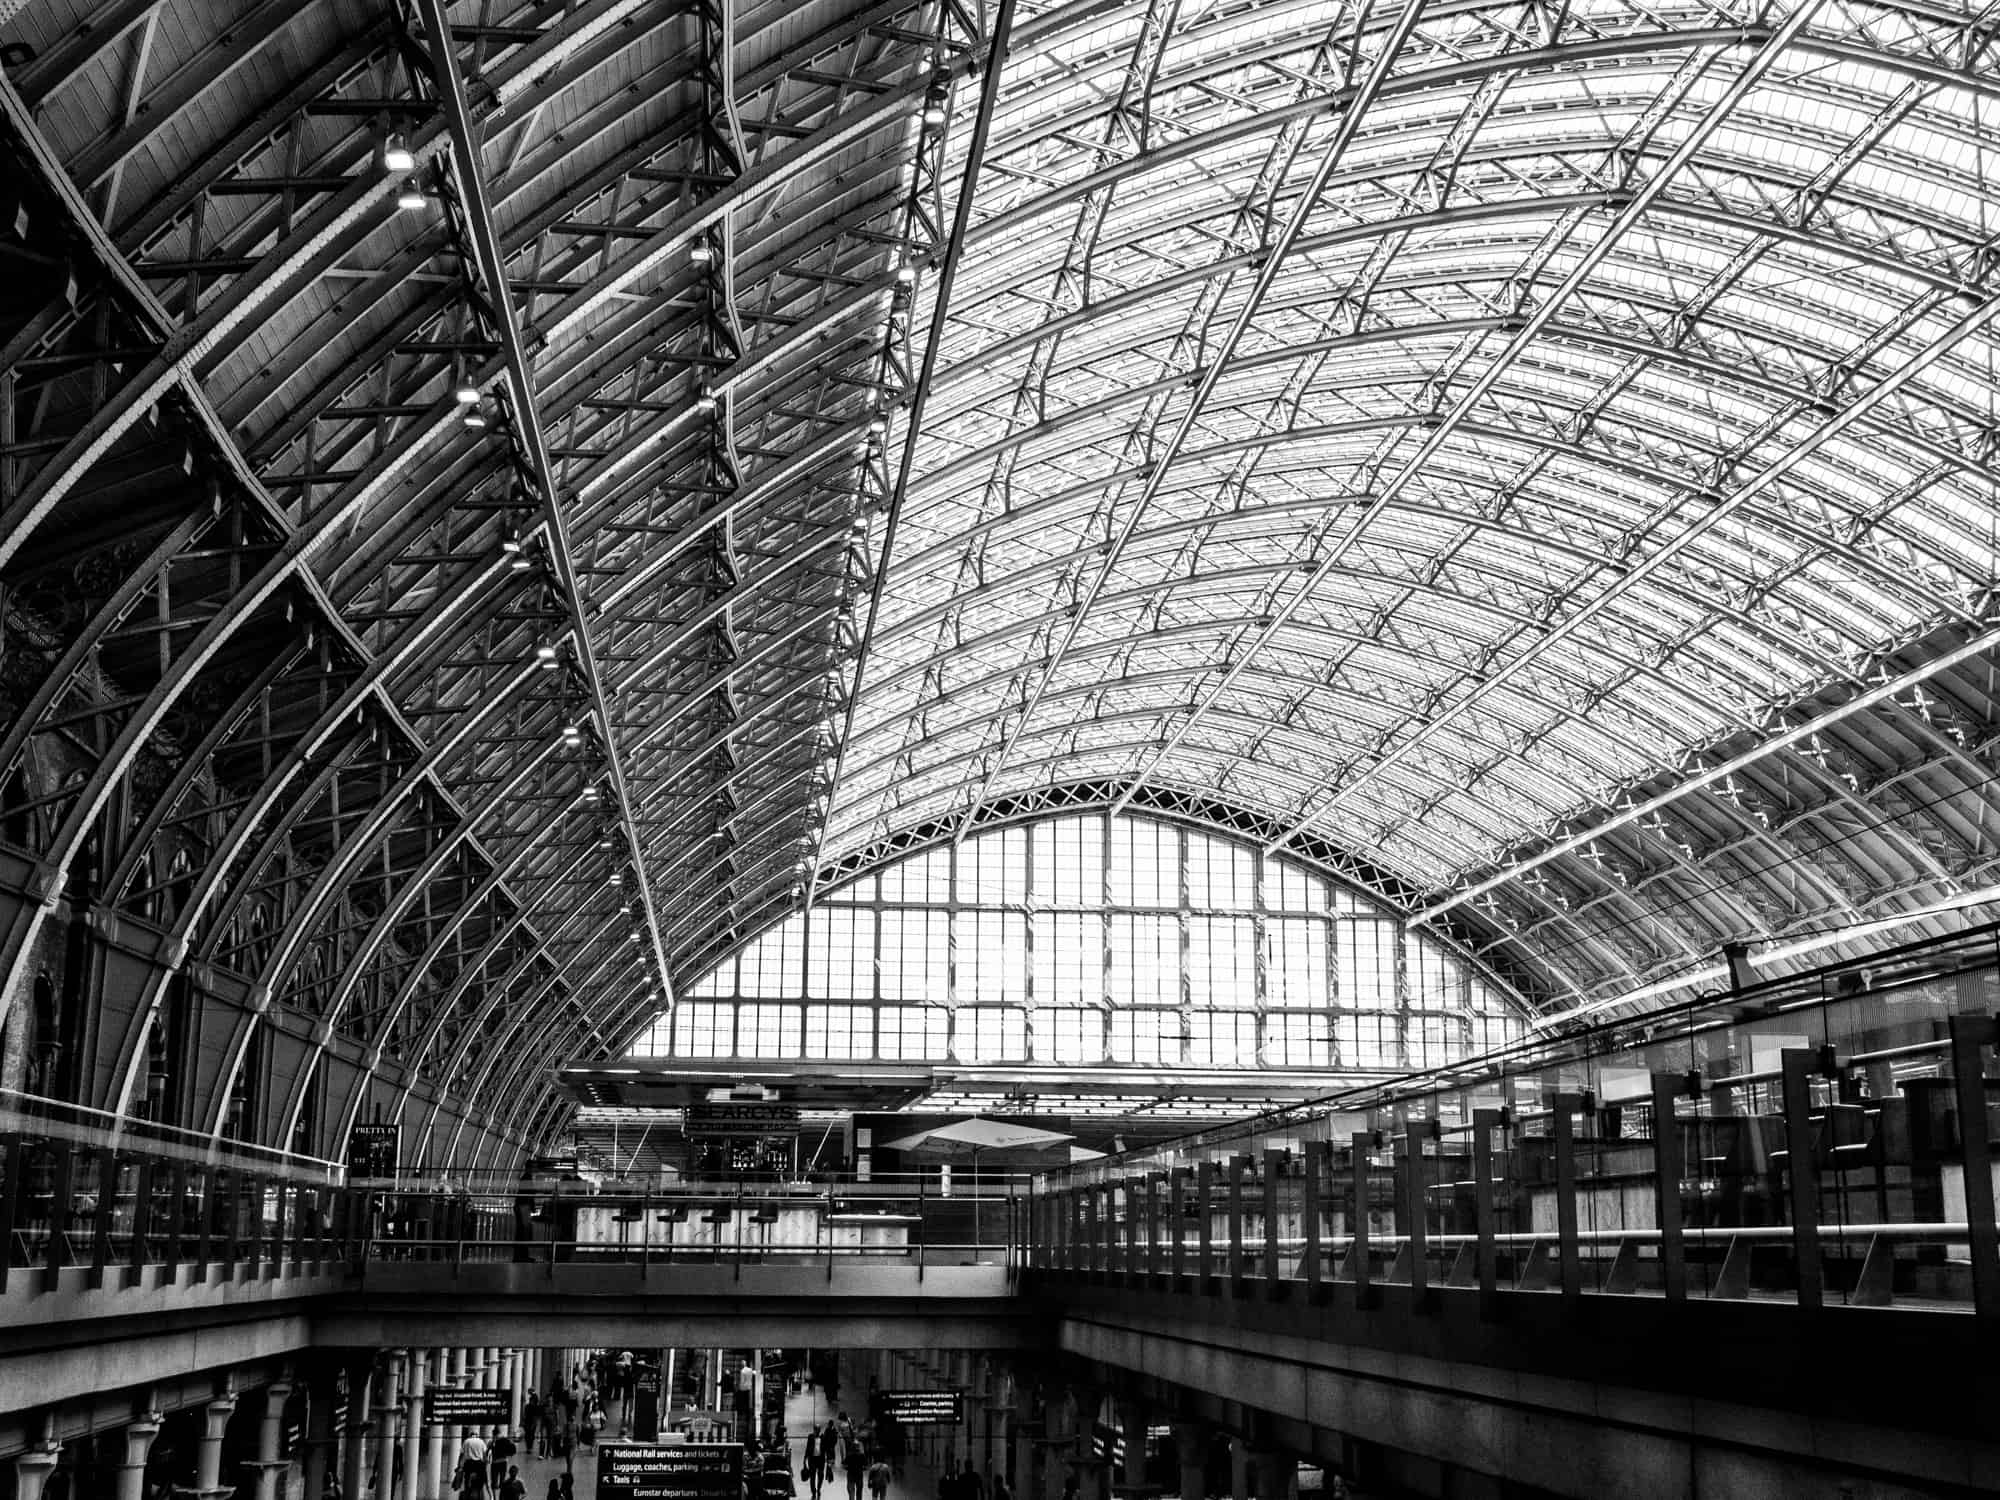 St Pancras train station, London